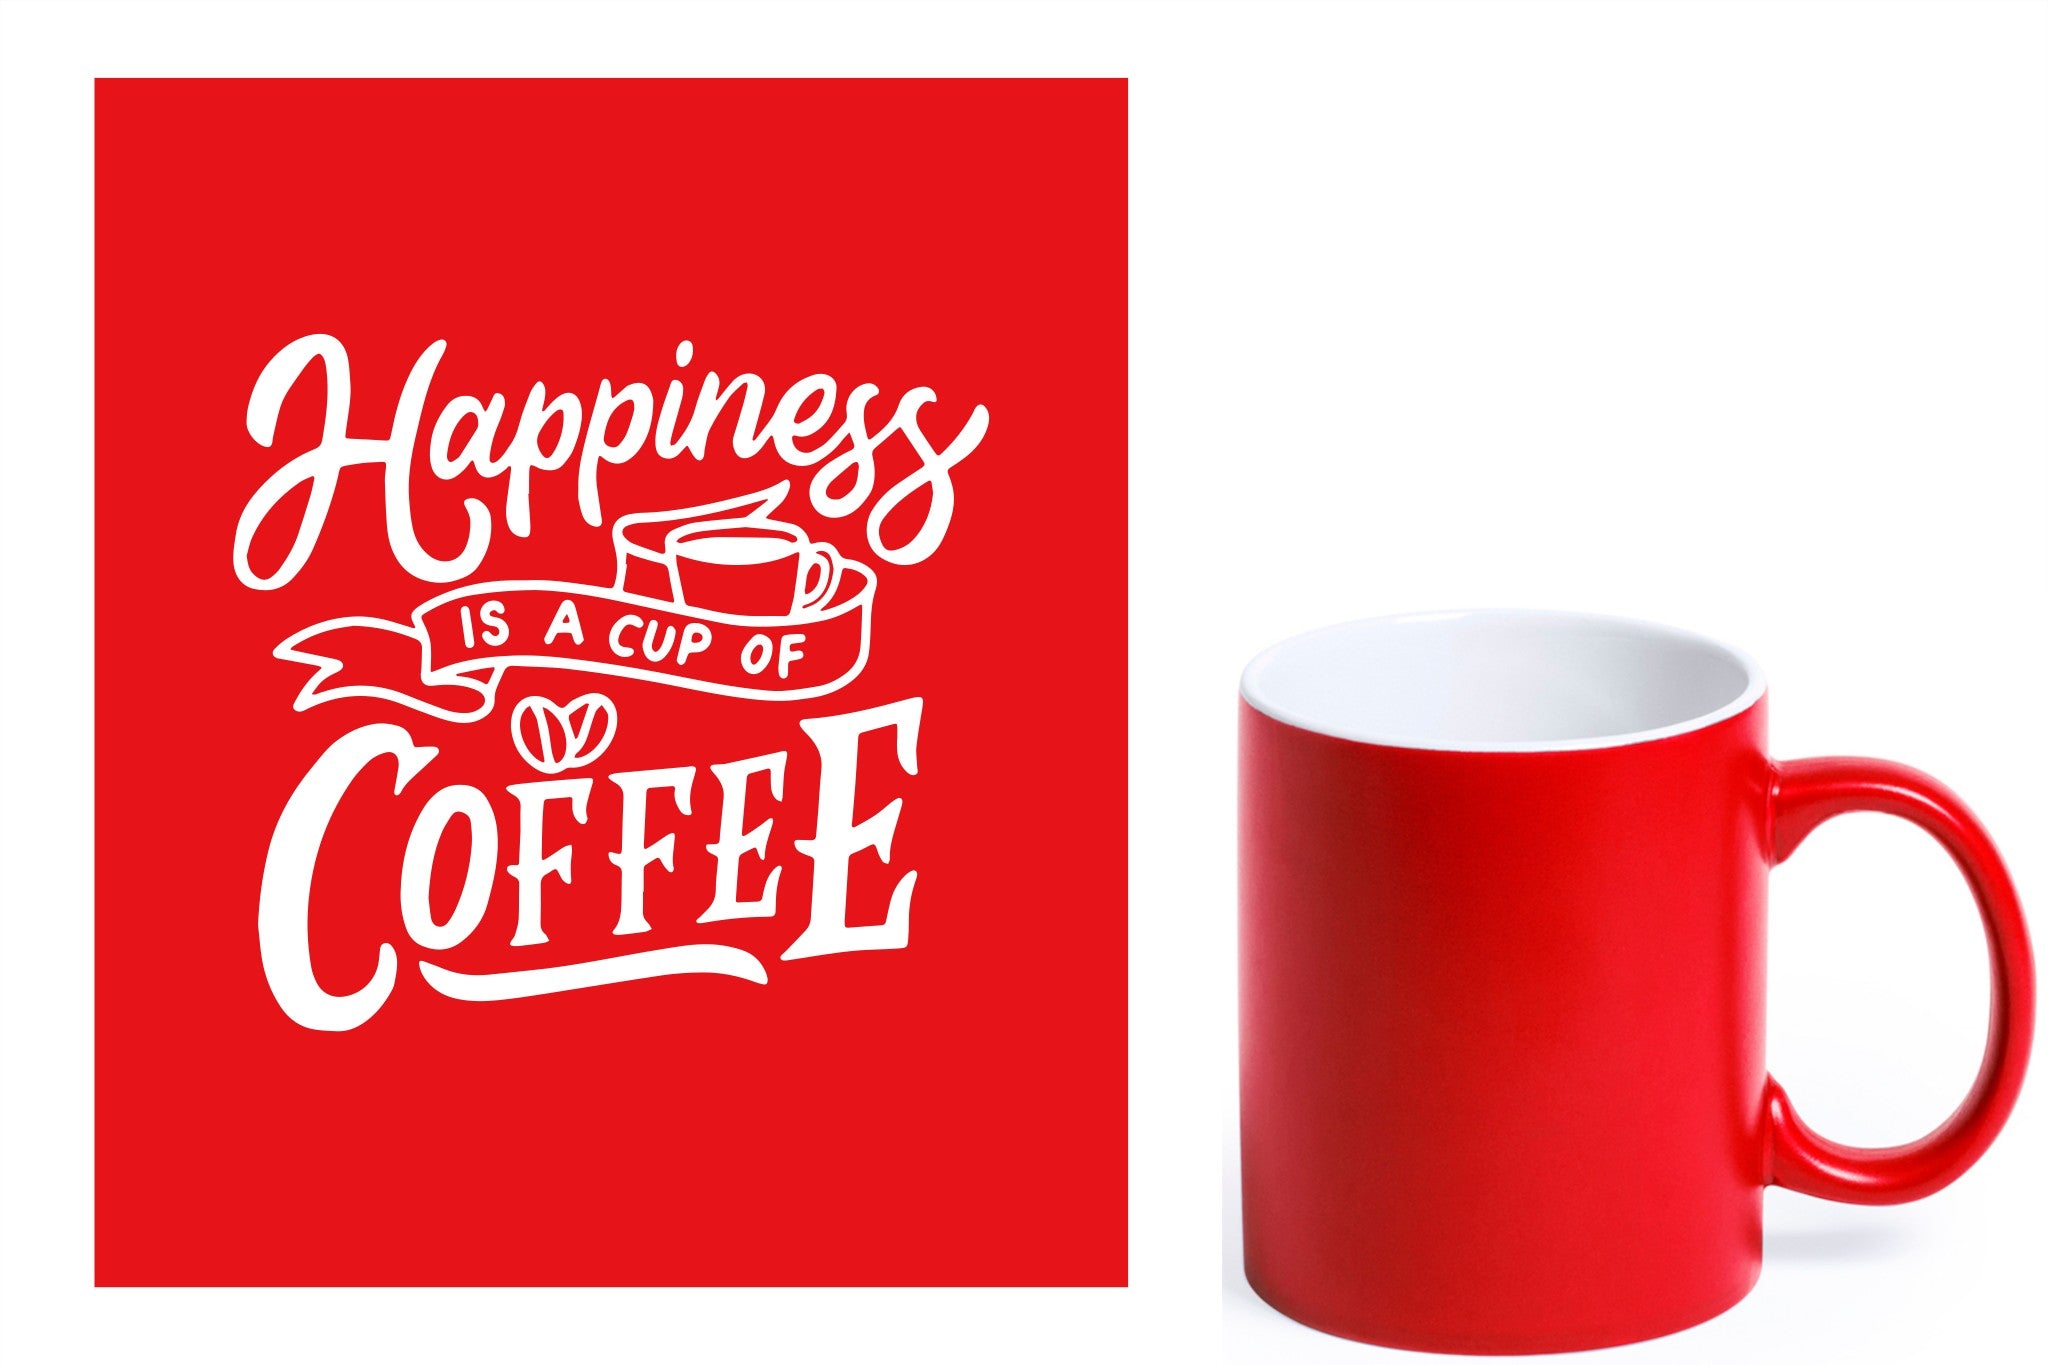 rode keramische mok met witte gravure  'Happiness is a cup of coffee'.